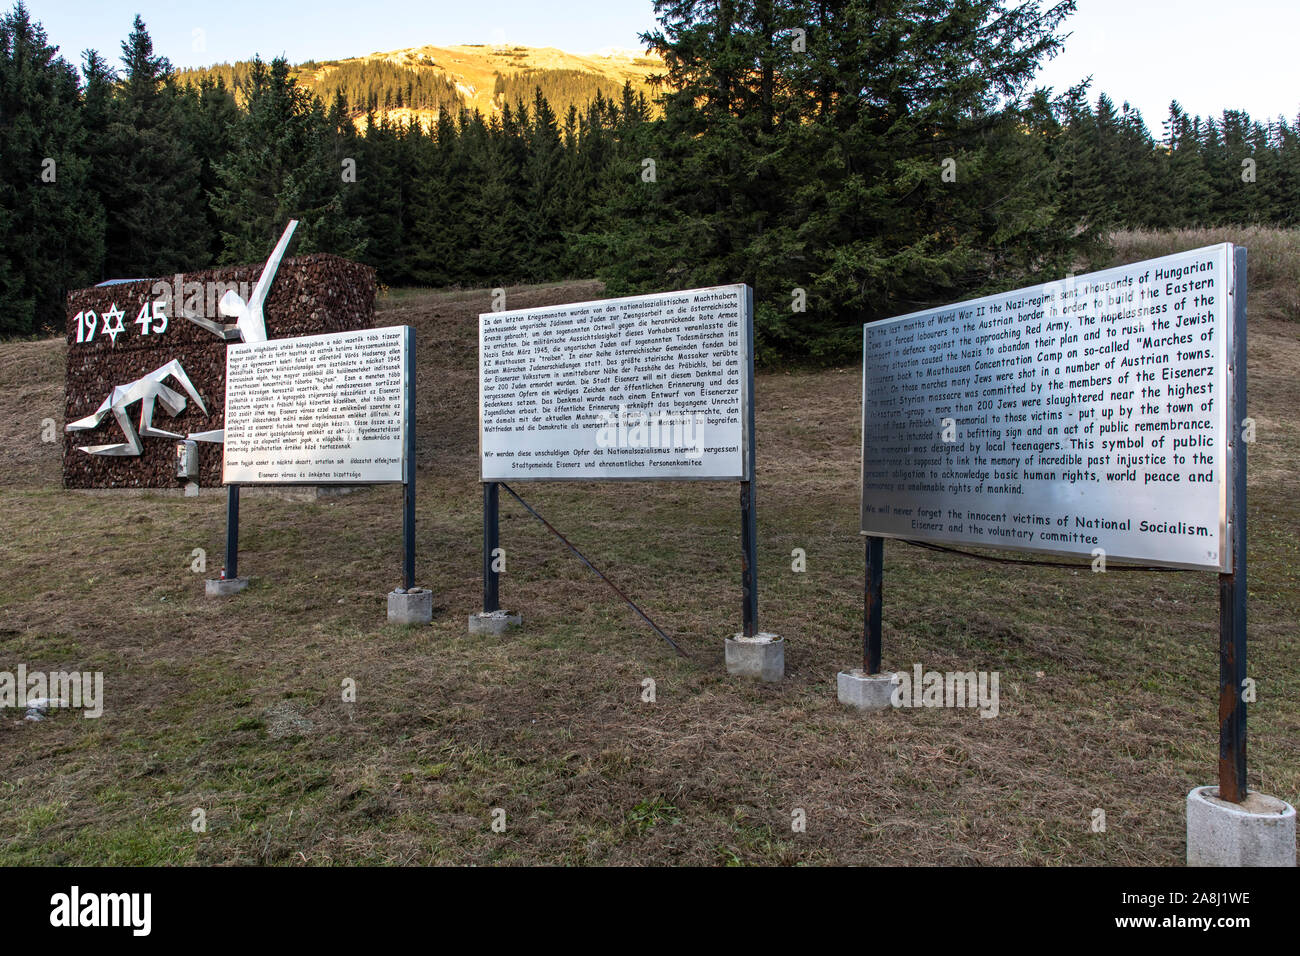 Praebichl la montagne près de eisenerz, Autriche : 27 octobre 2019 à murderd commémoratif de l'holocauste des Juifs sur leur chemin vers le camp de concentration de Mauthausen en 1945 Banque D'Images